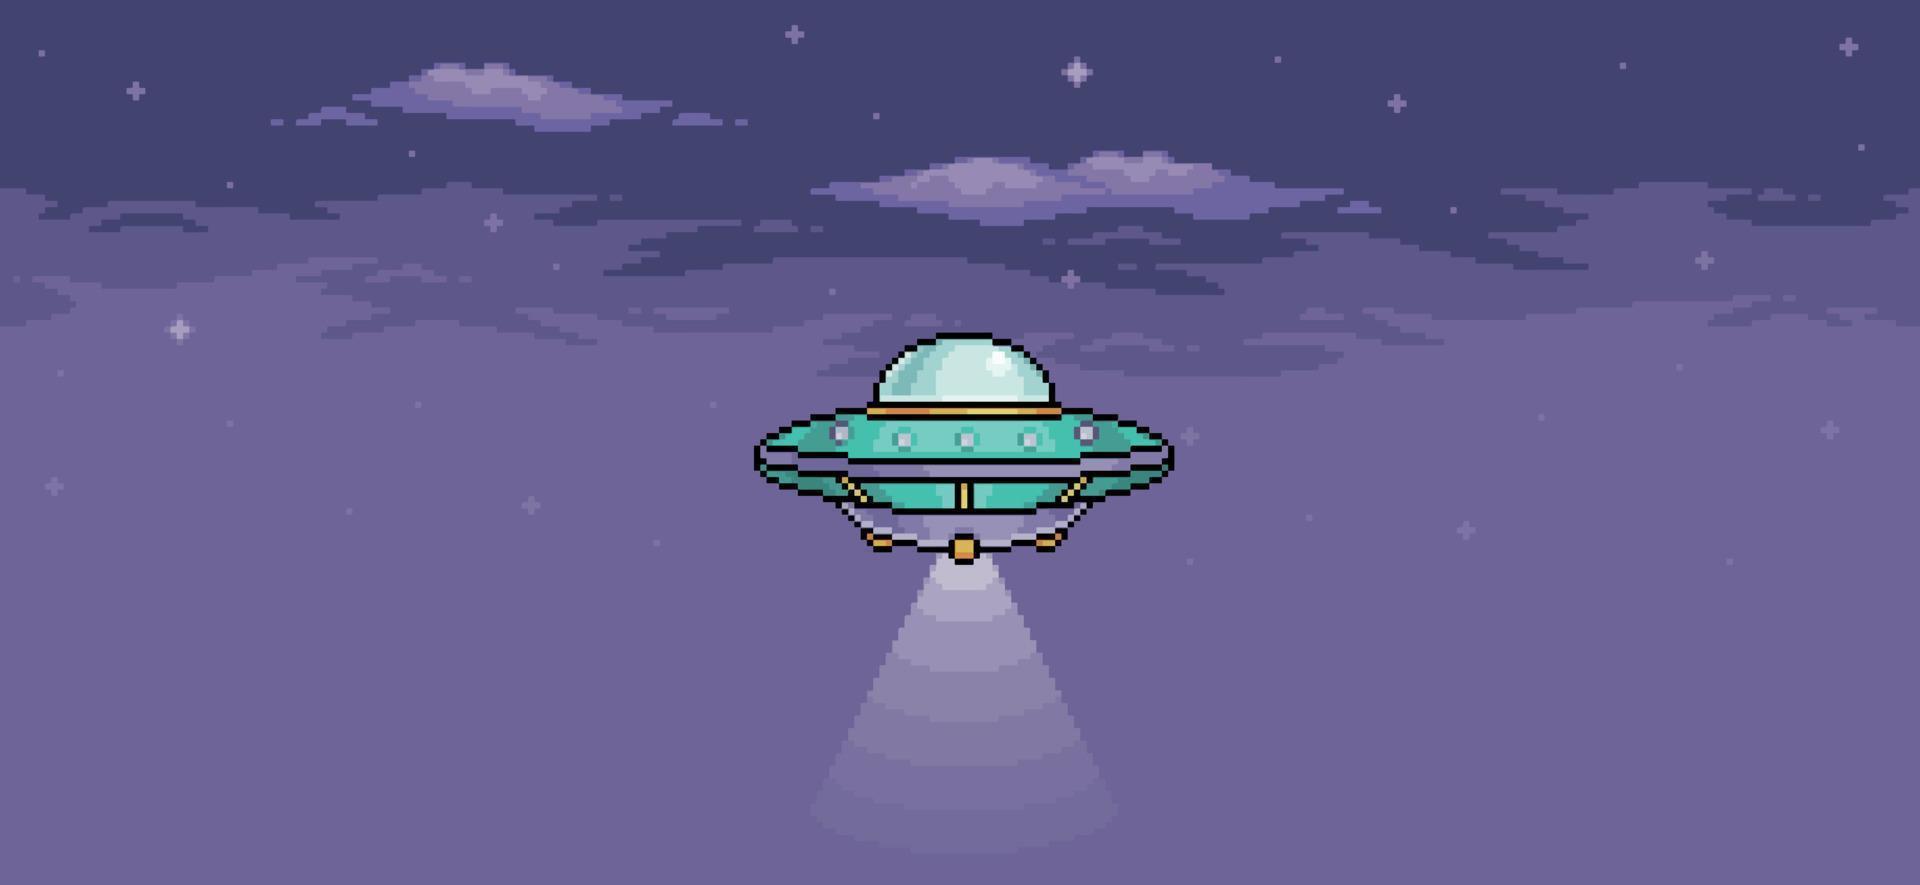 pixel art ufo nel cielo notturno. astronave aliena che vola con le luci accese. Sfondo vettoriale a 8 bit